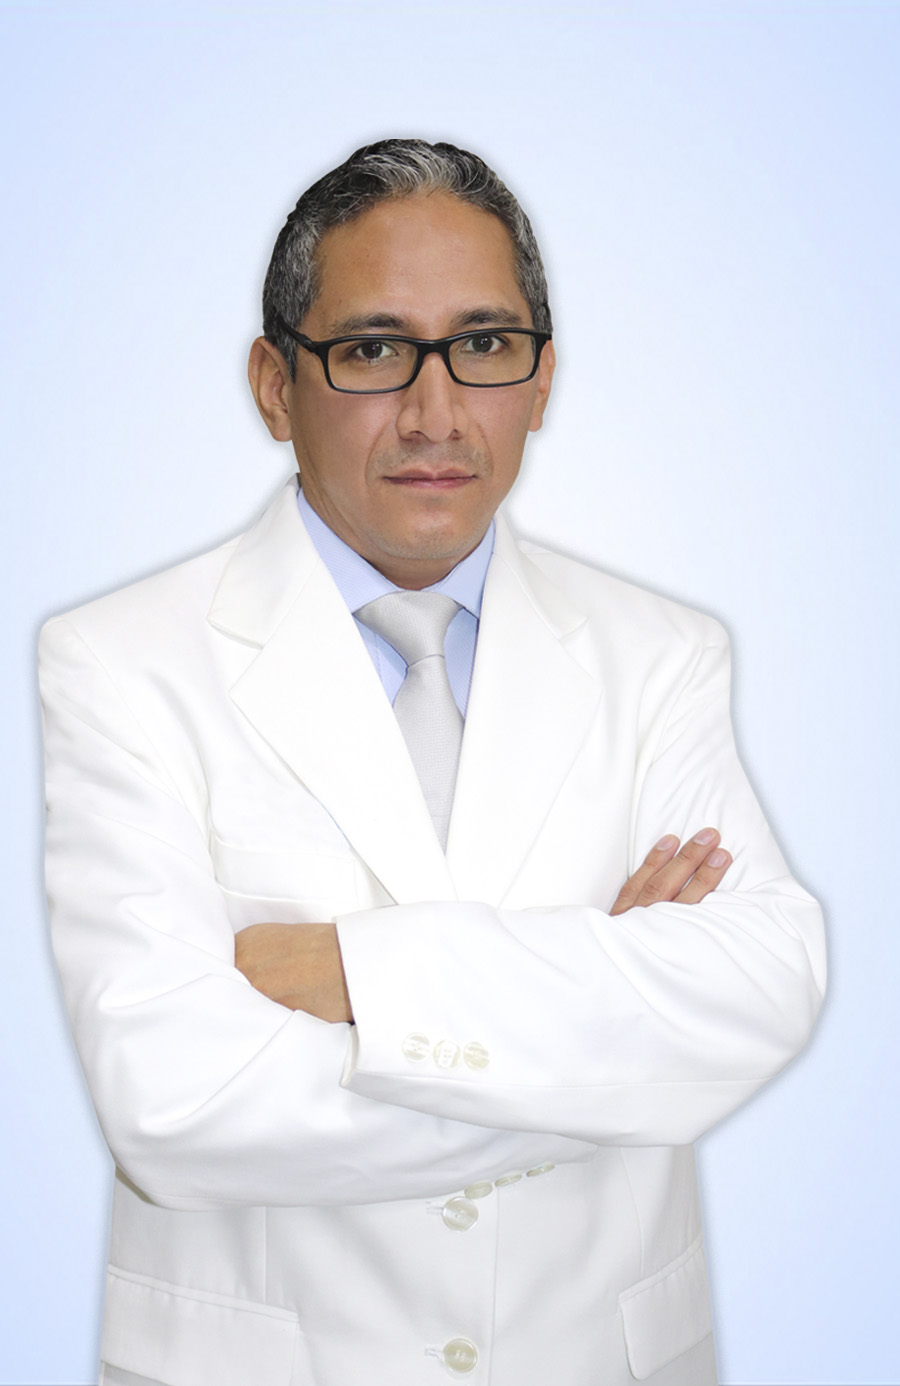 DR. CONDE SALAZAR